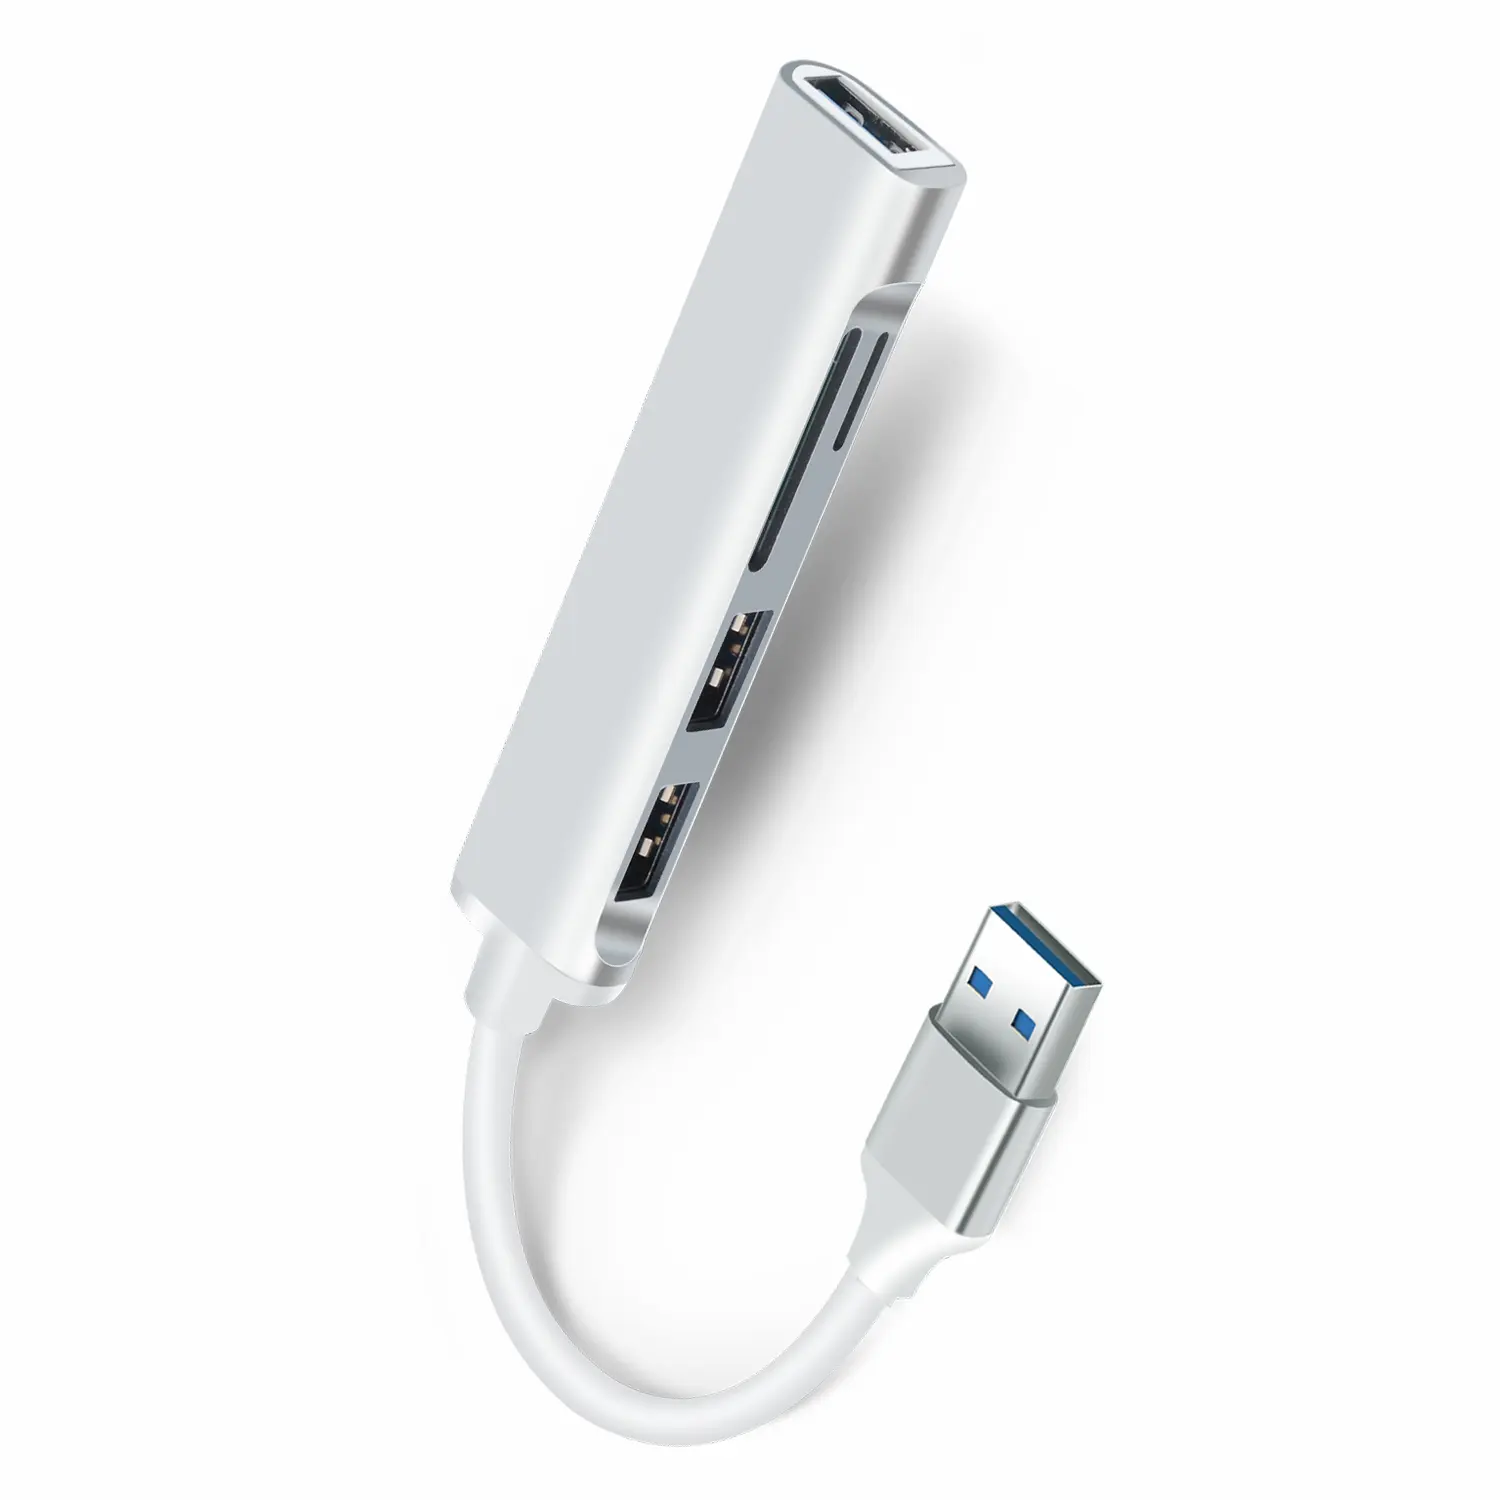 5 in 1 tip A 5 Port USB 3.0 Hub, Mini USB Splitter bilgisayar dizüstü masaüstü aksesuarları için çoklu uzatma